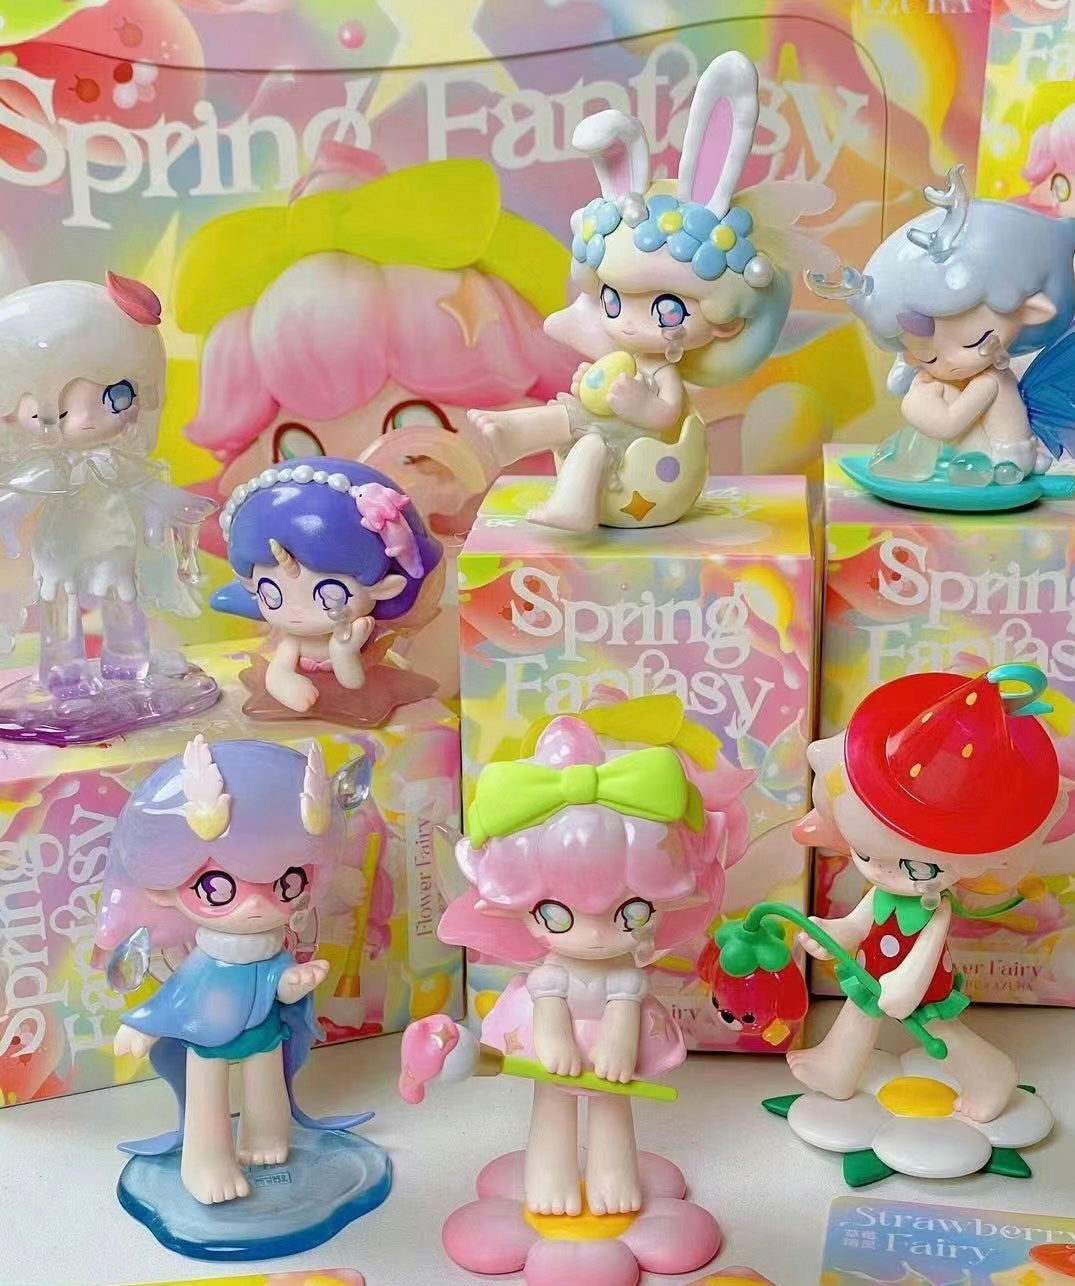 (Popmart) Azura spring fantasy cute series DIY